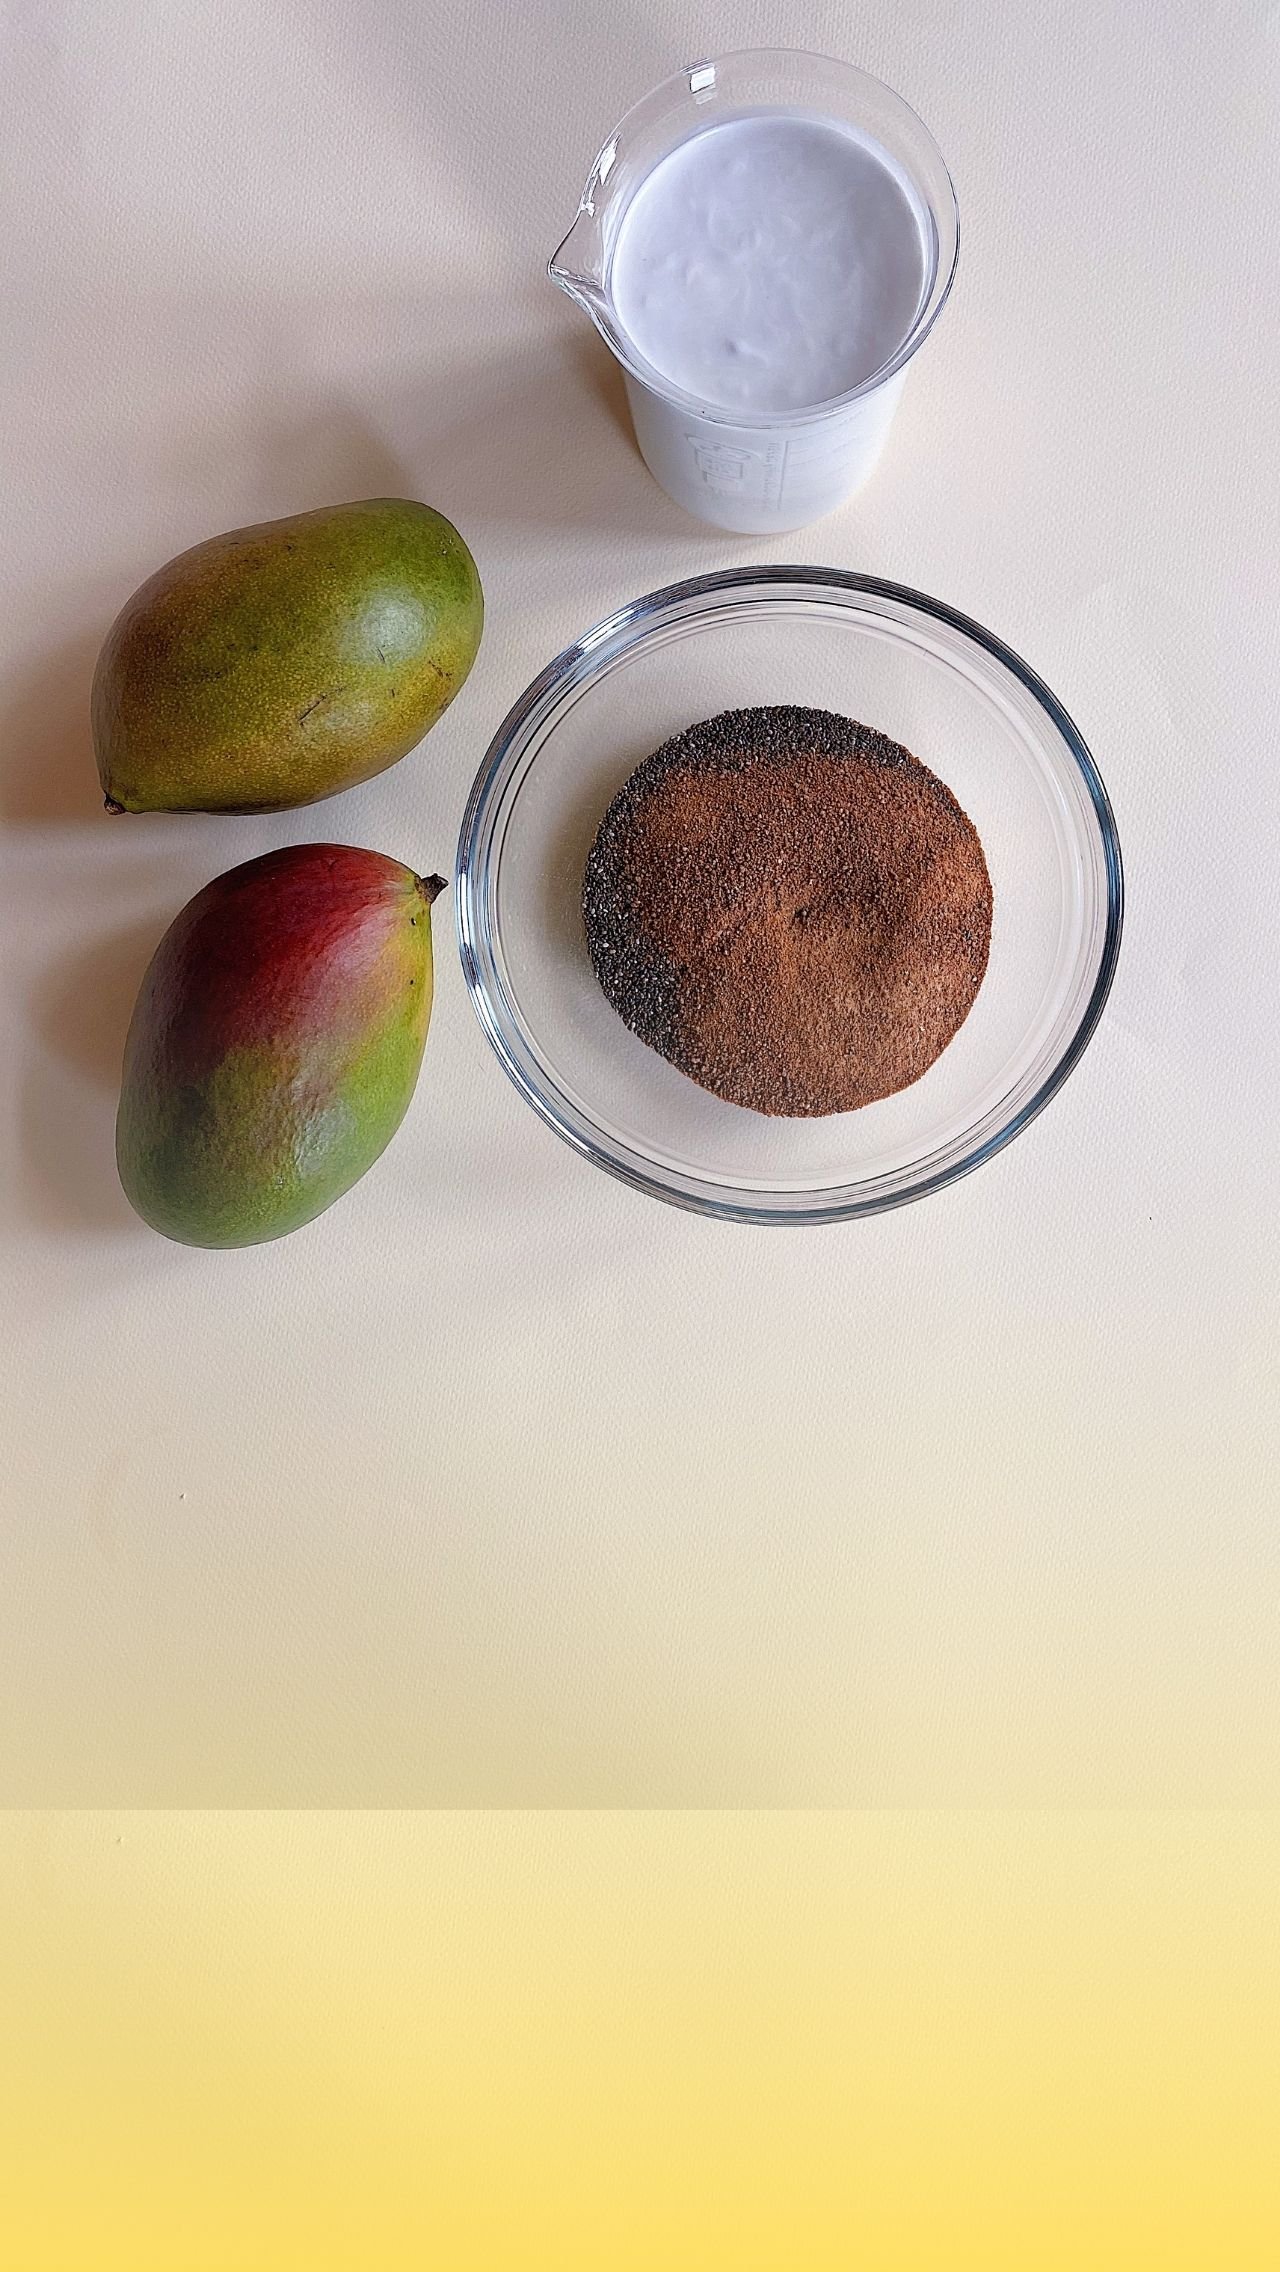 Сначала смешиваем сухие ингредиенты: семена чиа и кокосовый сахар. 